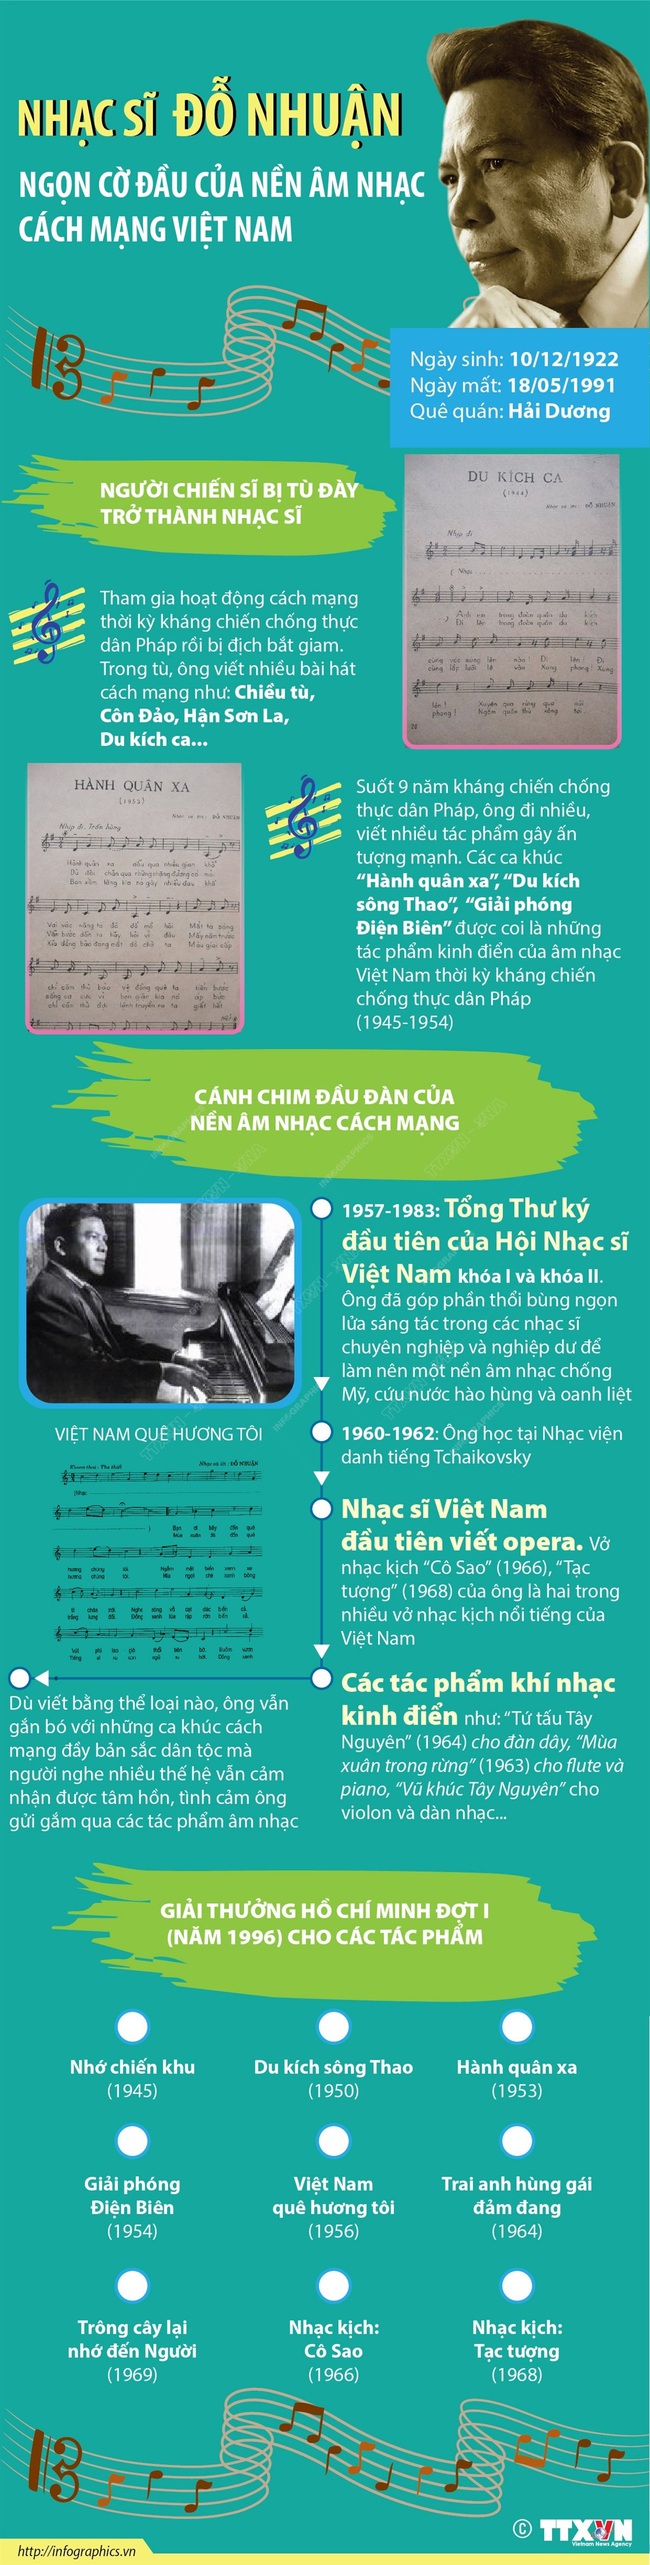 Nhạc sĩ Đỗ Nhuận - ngọn cờ đầu của âm nhạc Cách mạng Việt Nam - Ảnh 3.